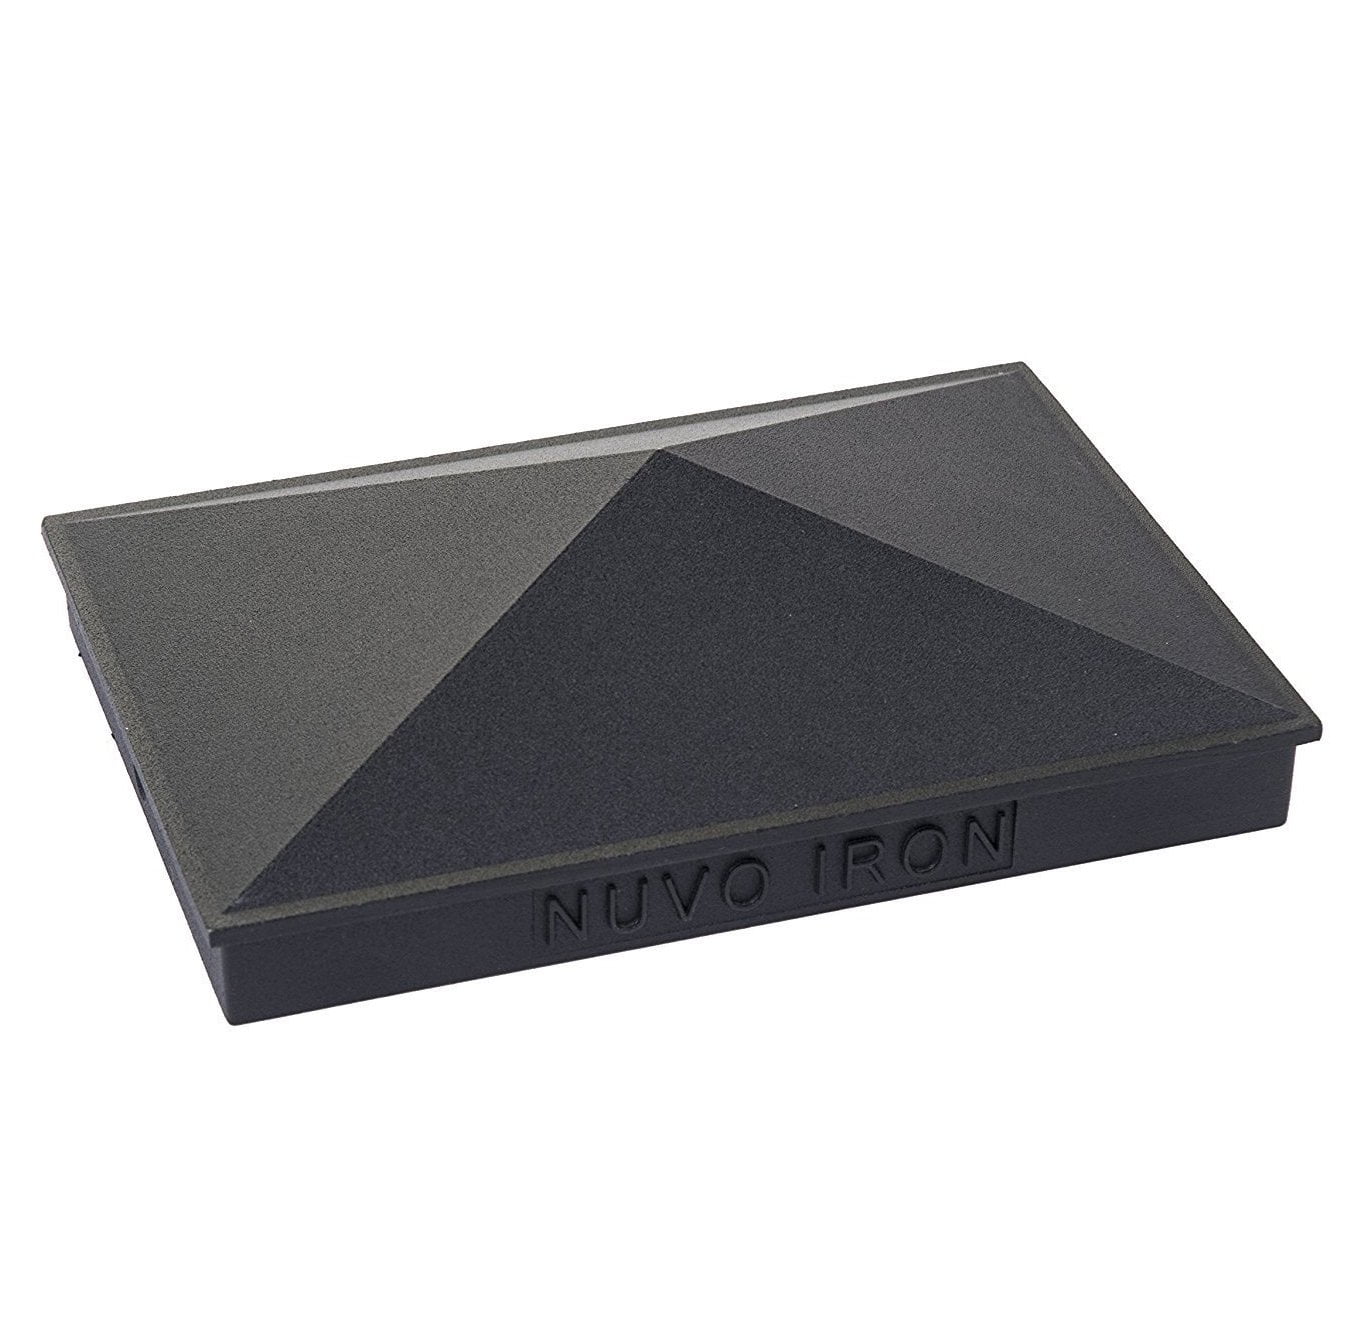 Black Nuvo Iron Pyramid Aluminium Post Cap for 7.5" x 7.5" 8" x 8" Posts 